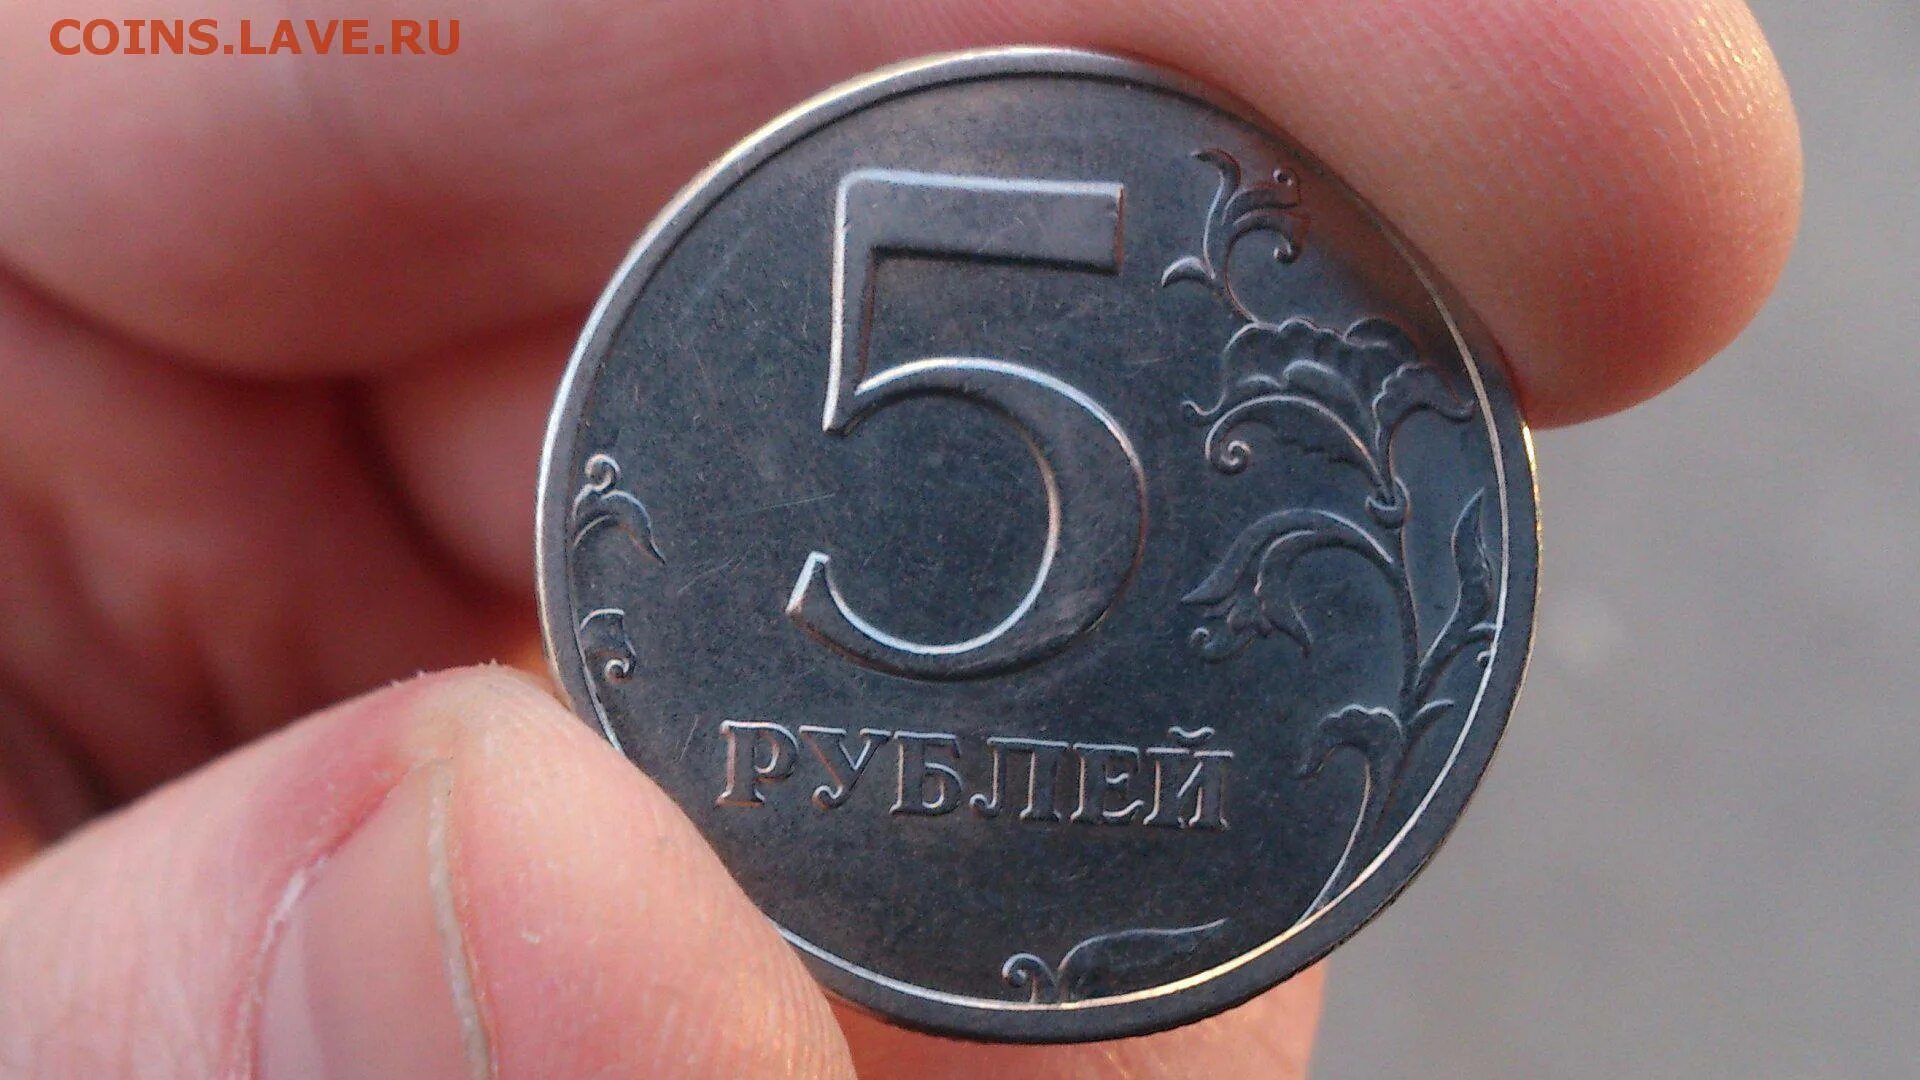 5 рублей заказать. Монеты. Монеты рубли. Монета 5 рублей в руке. Монетка 5 рублей.